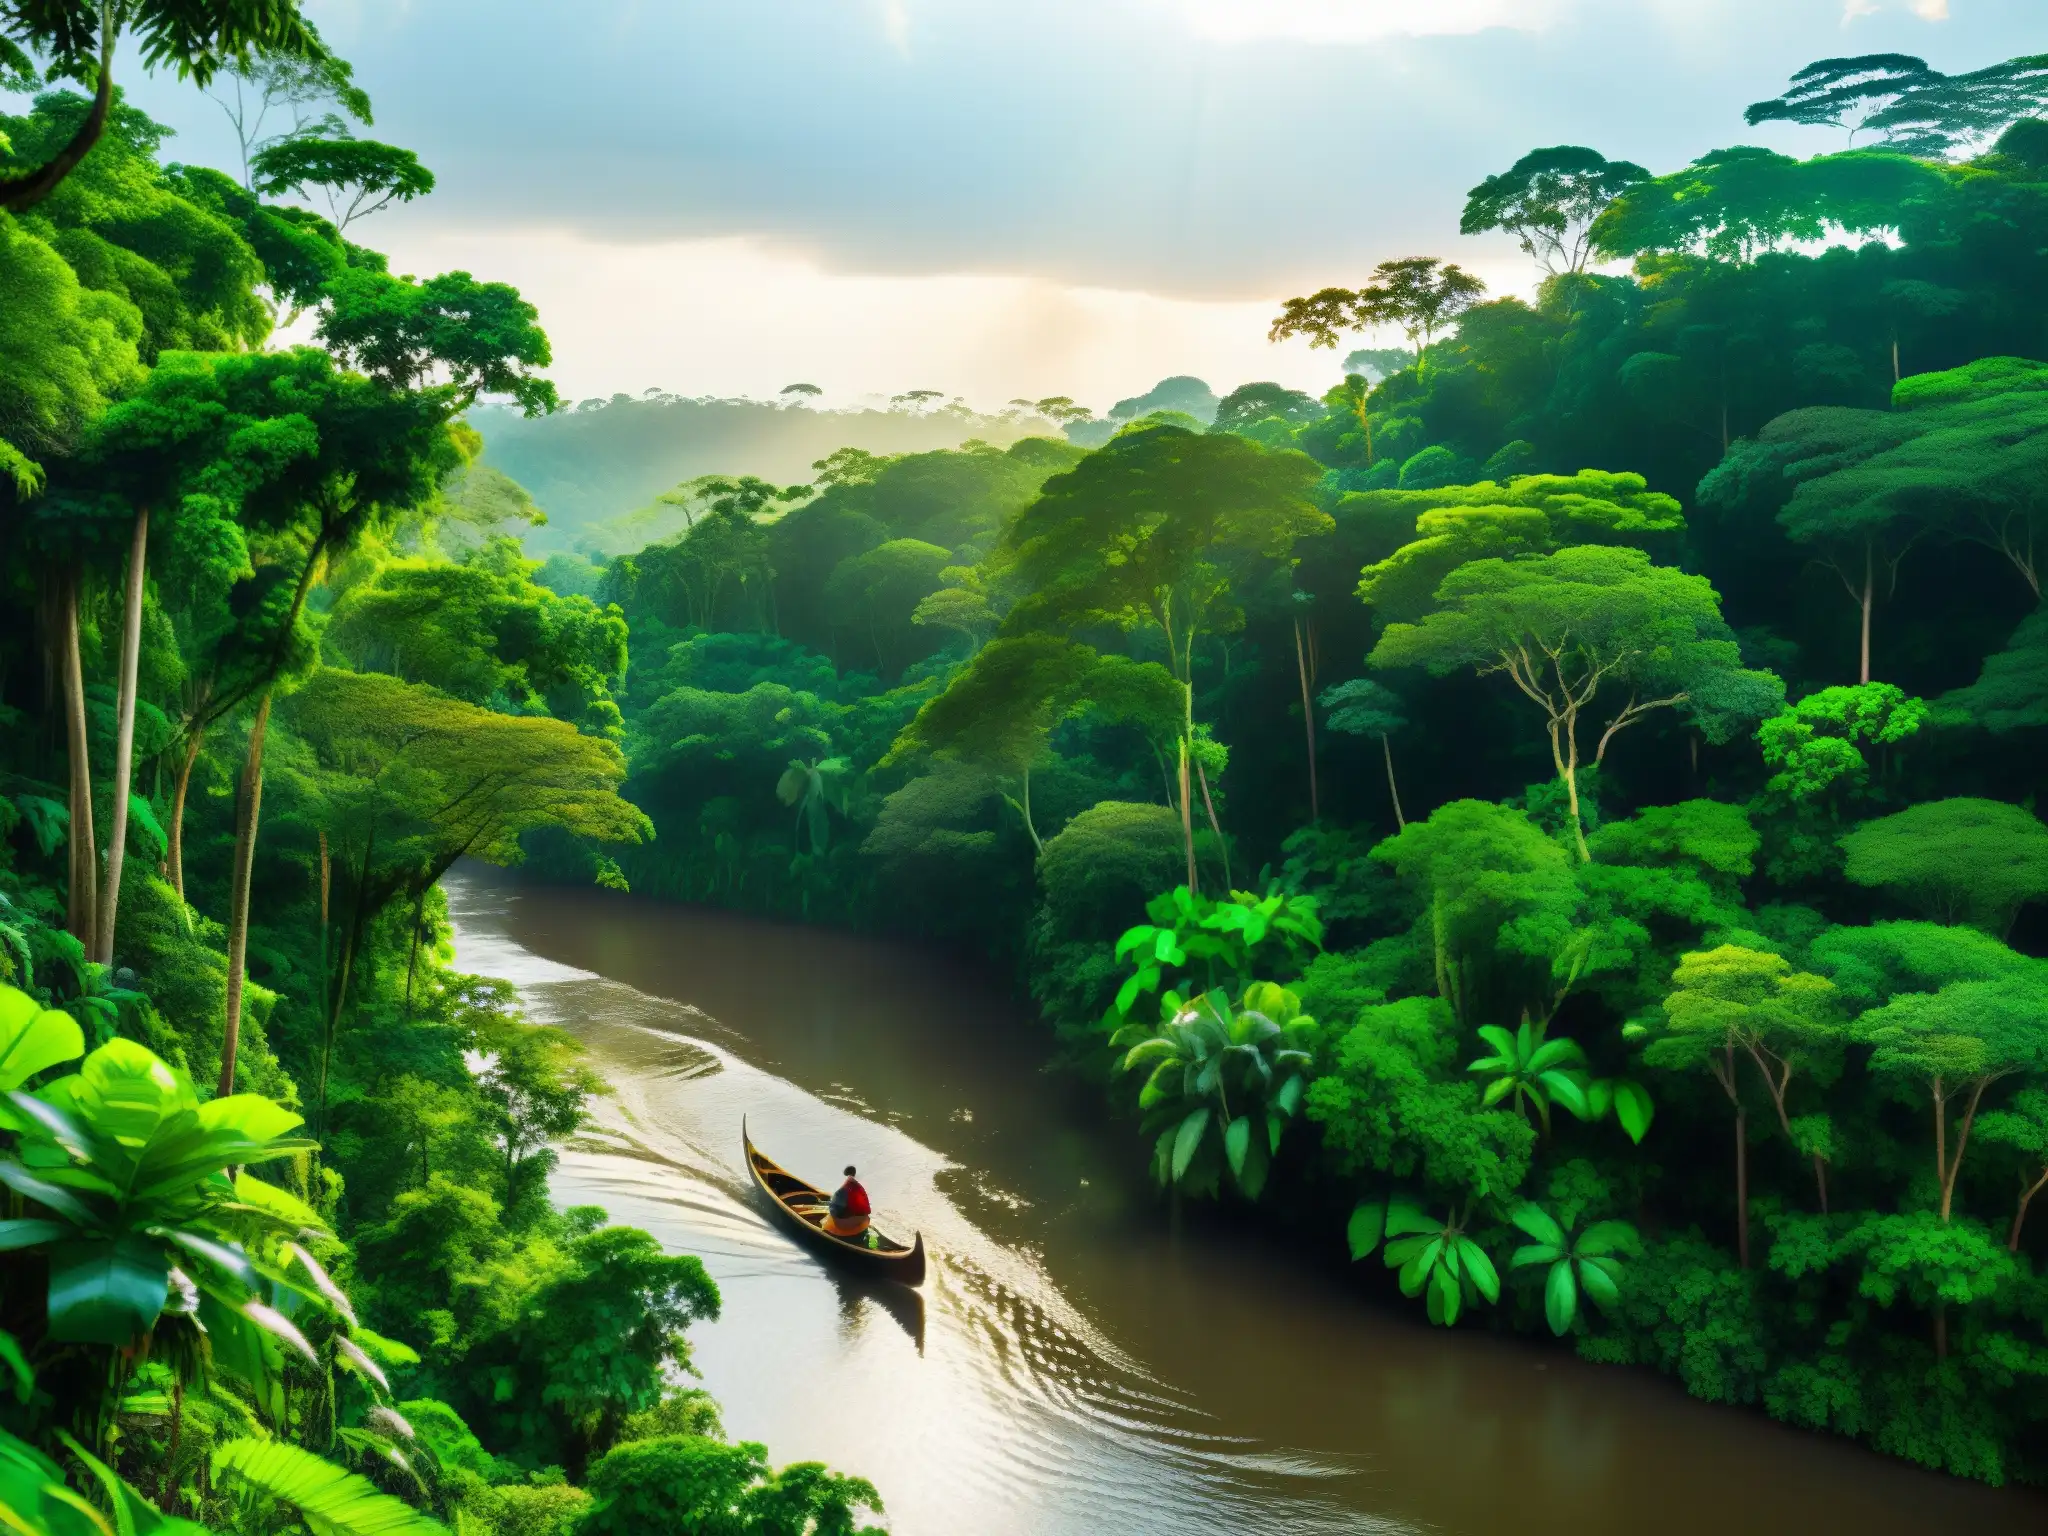 Explorando en canoa el misterio y la belleza del mito de la Encantada en el Amazonas